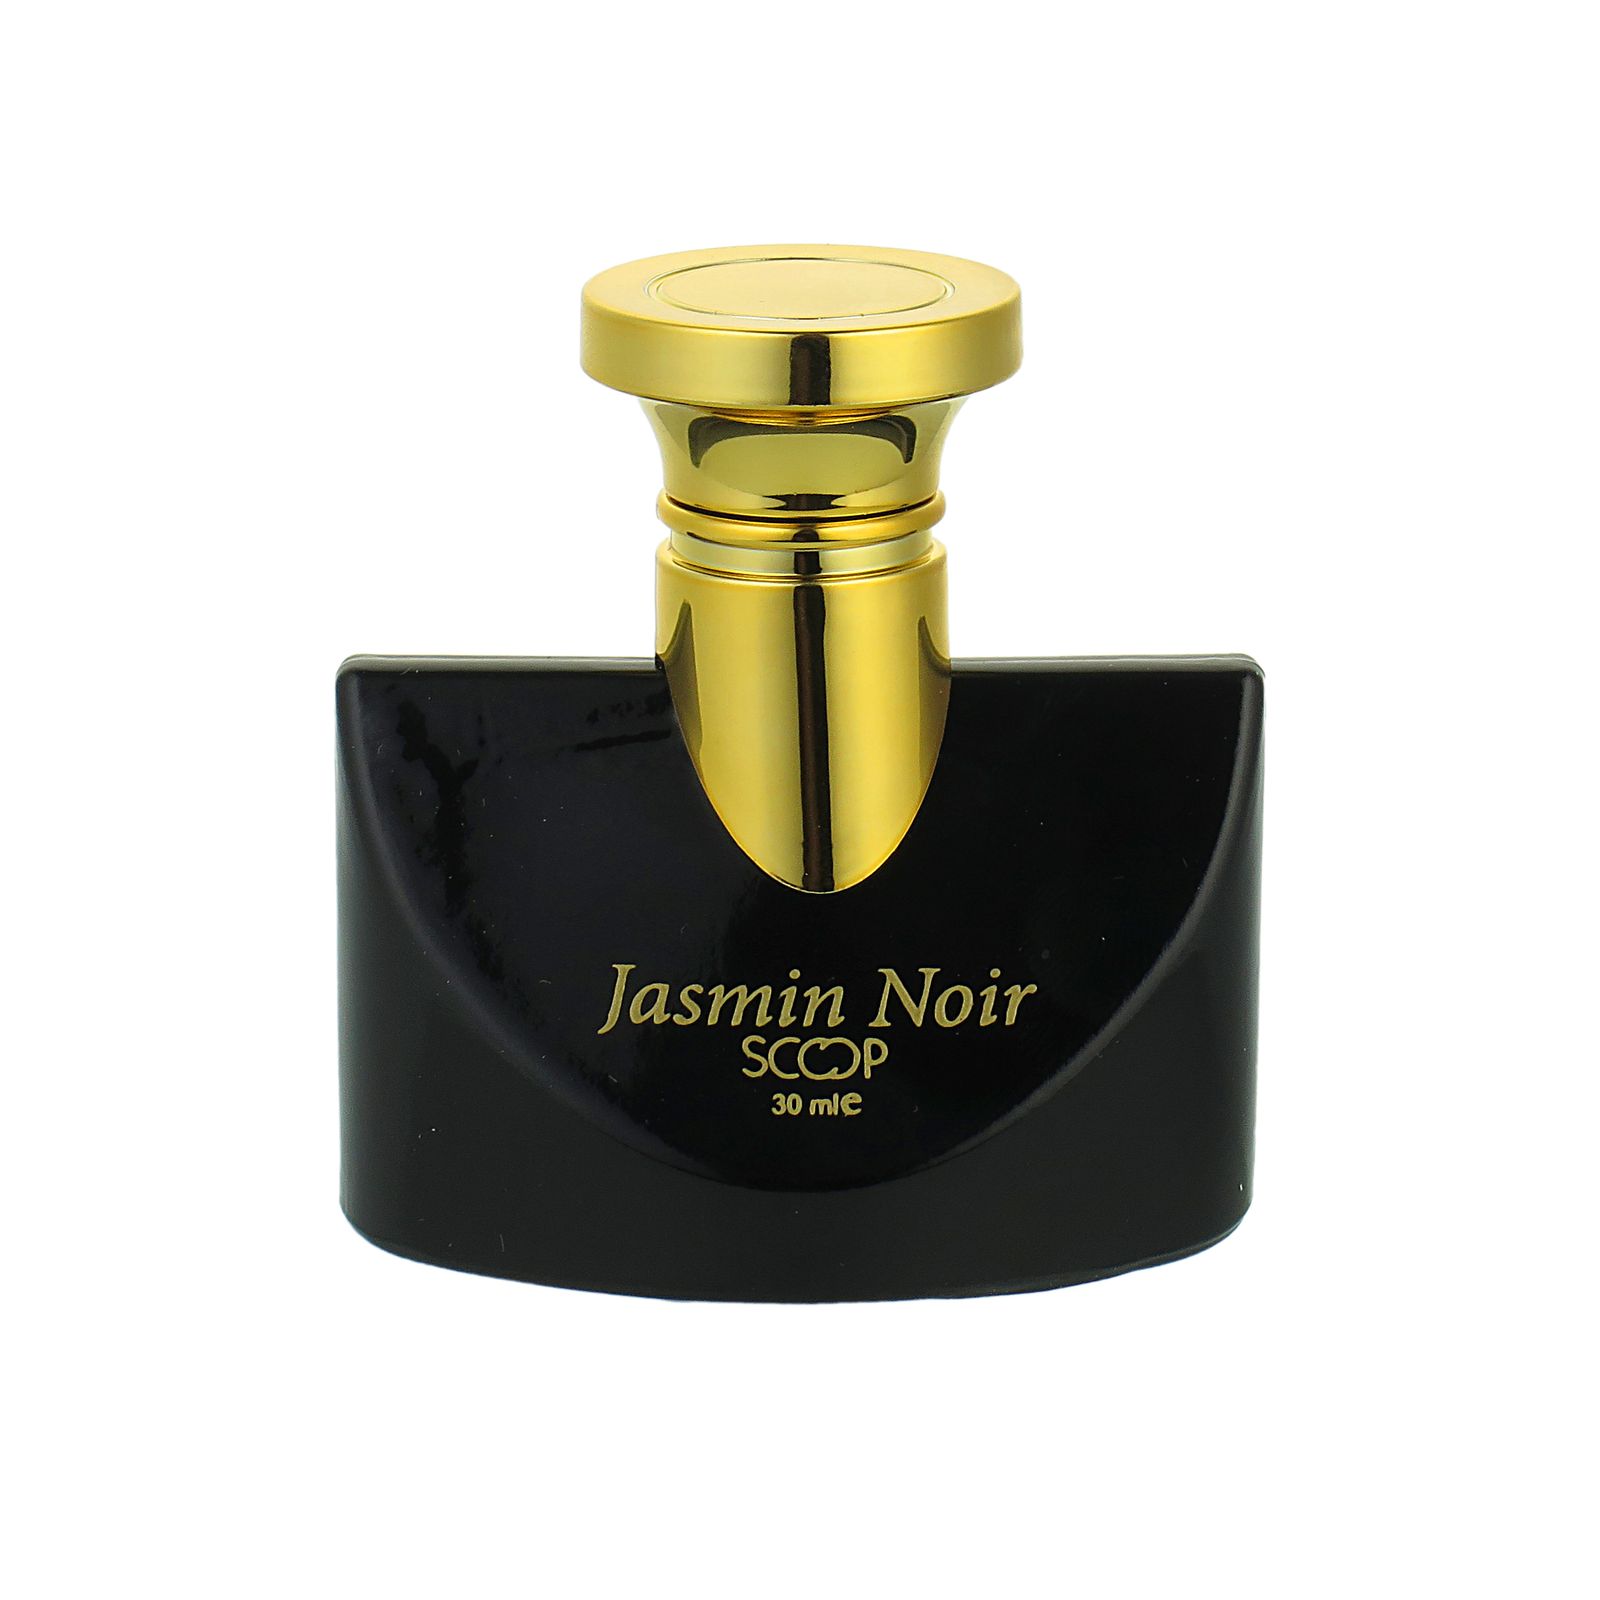 ادو پرفیوم زنانه اسکوپ مدل Jasmin Noir حجم 30 میلی لیتر